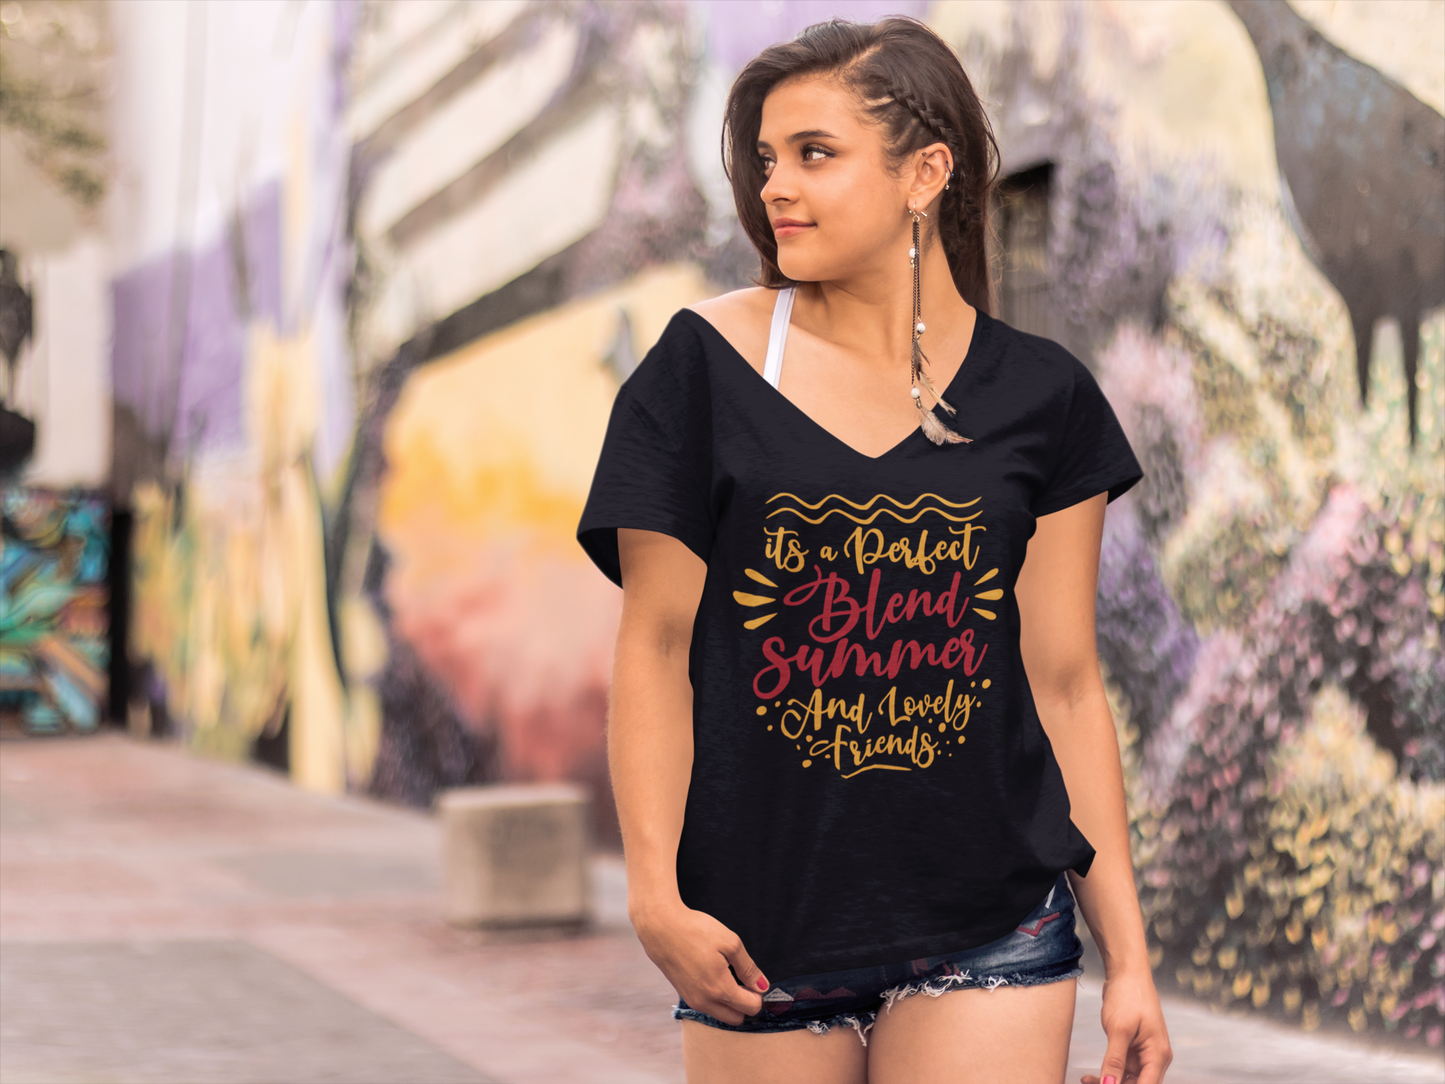 ULTRABASIC Damen-T-Shirt aus Sommer und schönen Freunden – Love Quote Shirt